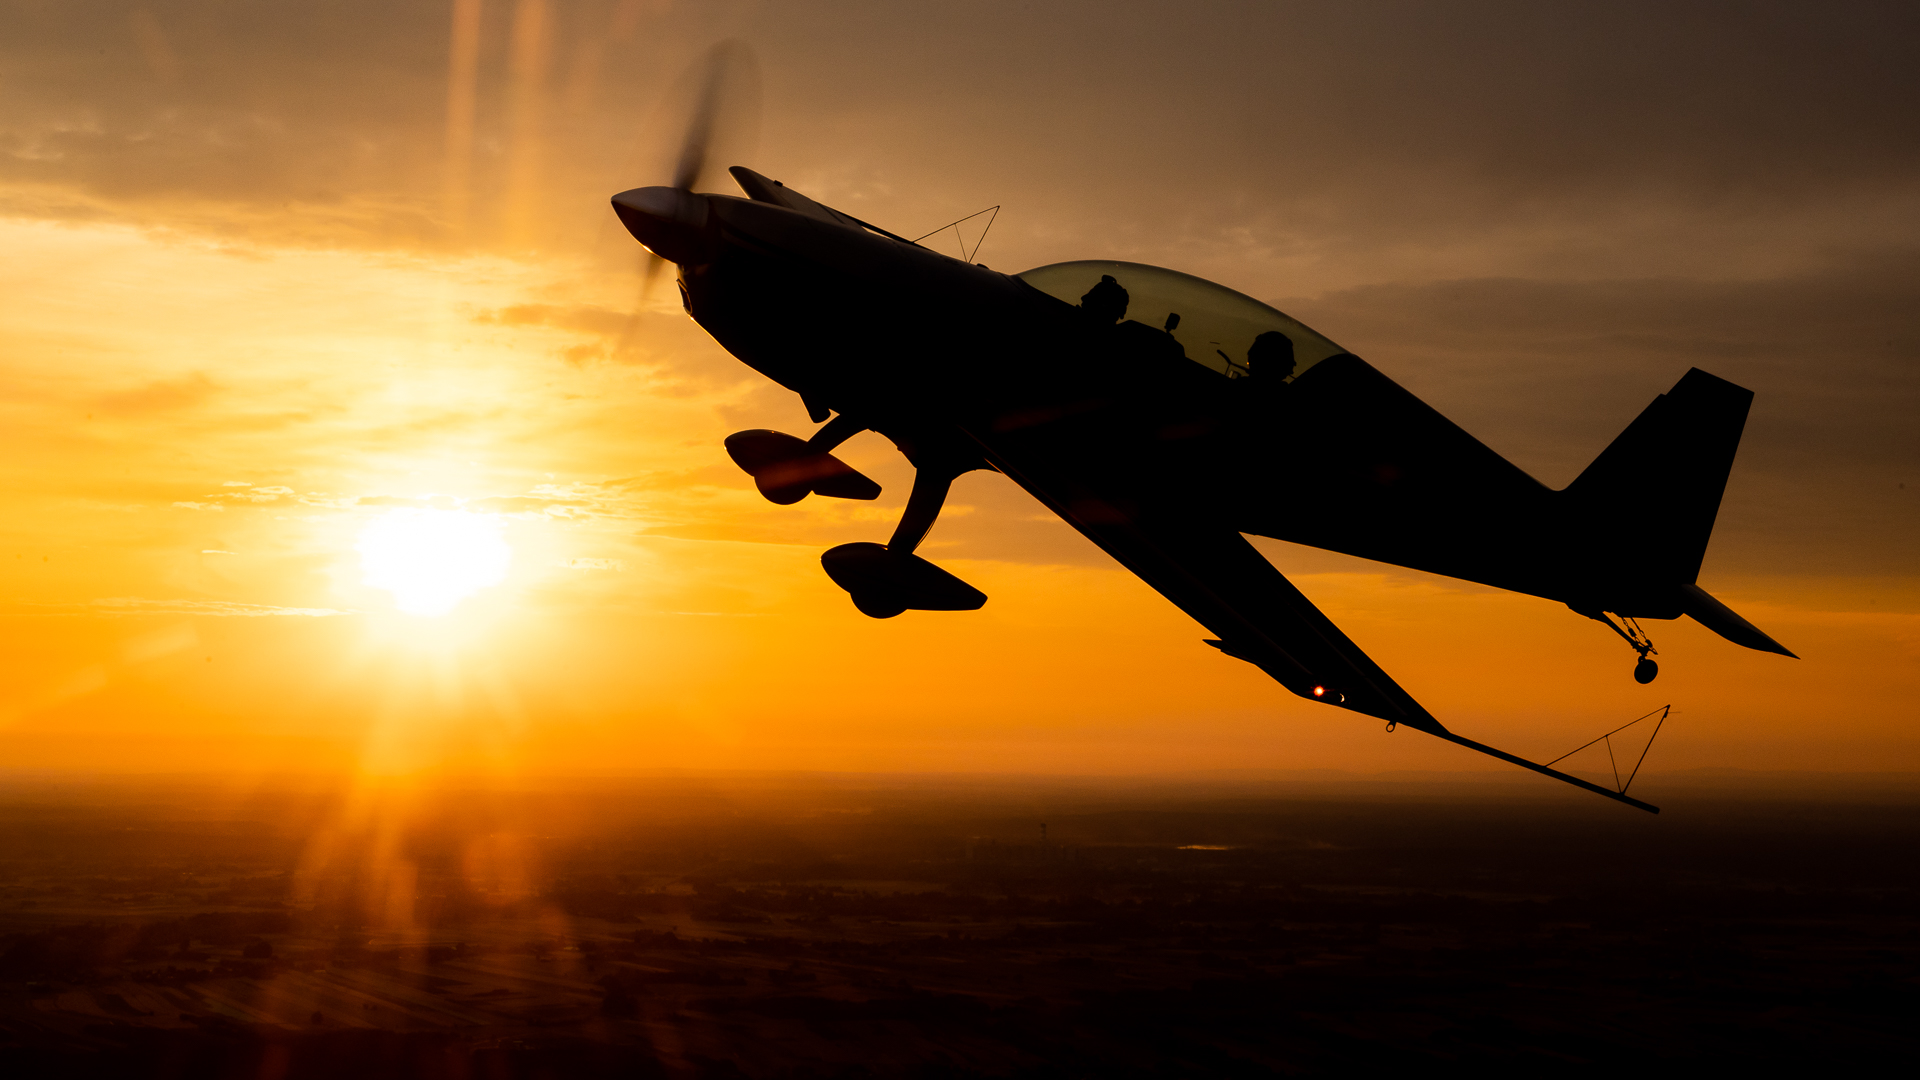 Samolot Extra 300L w locie w blasku zachodzącego słońca